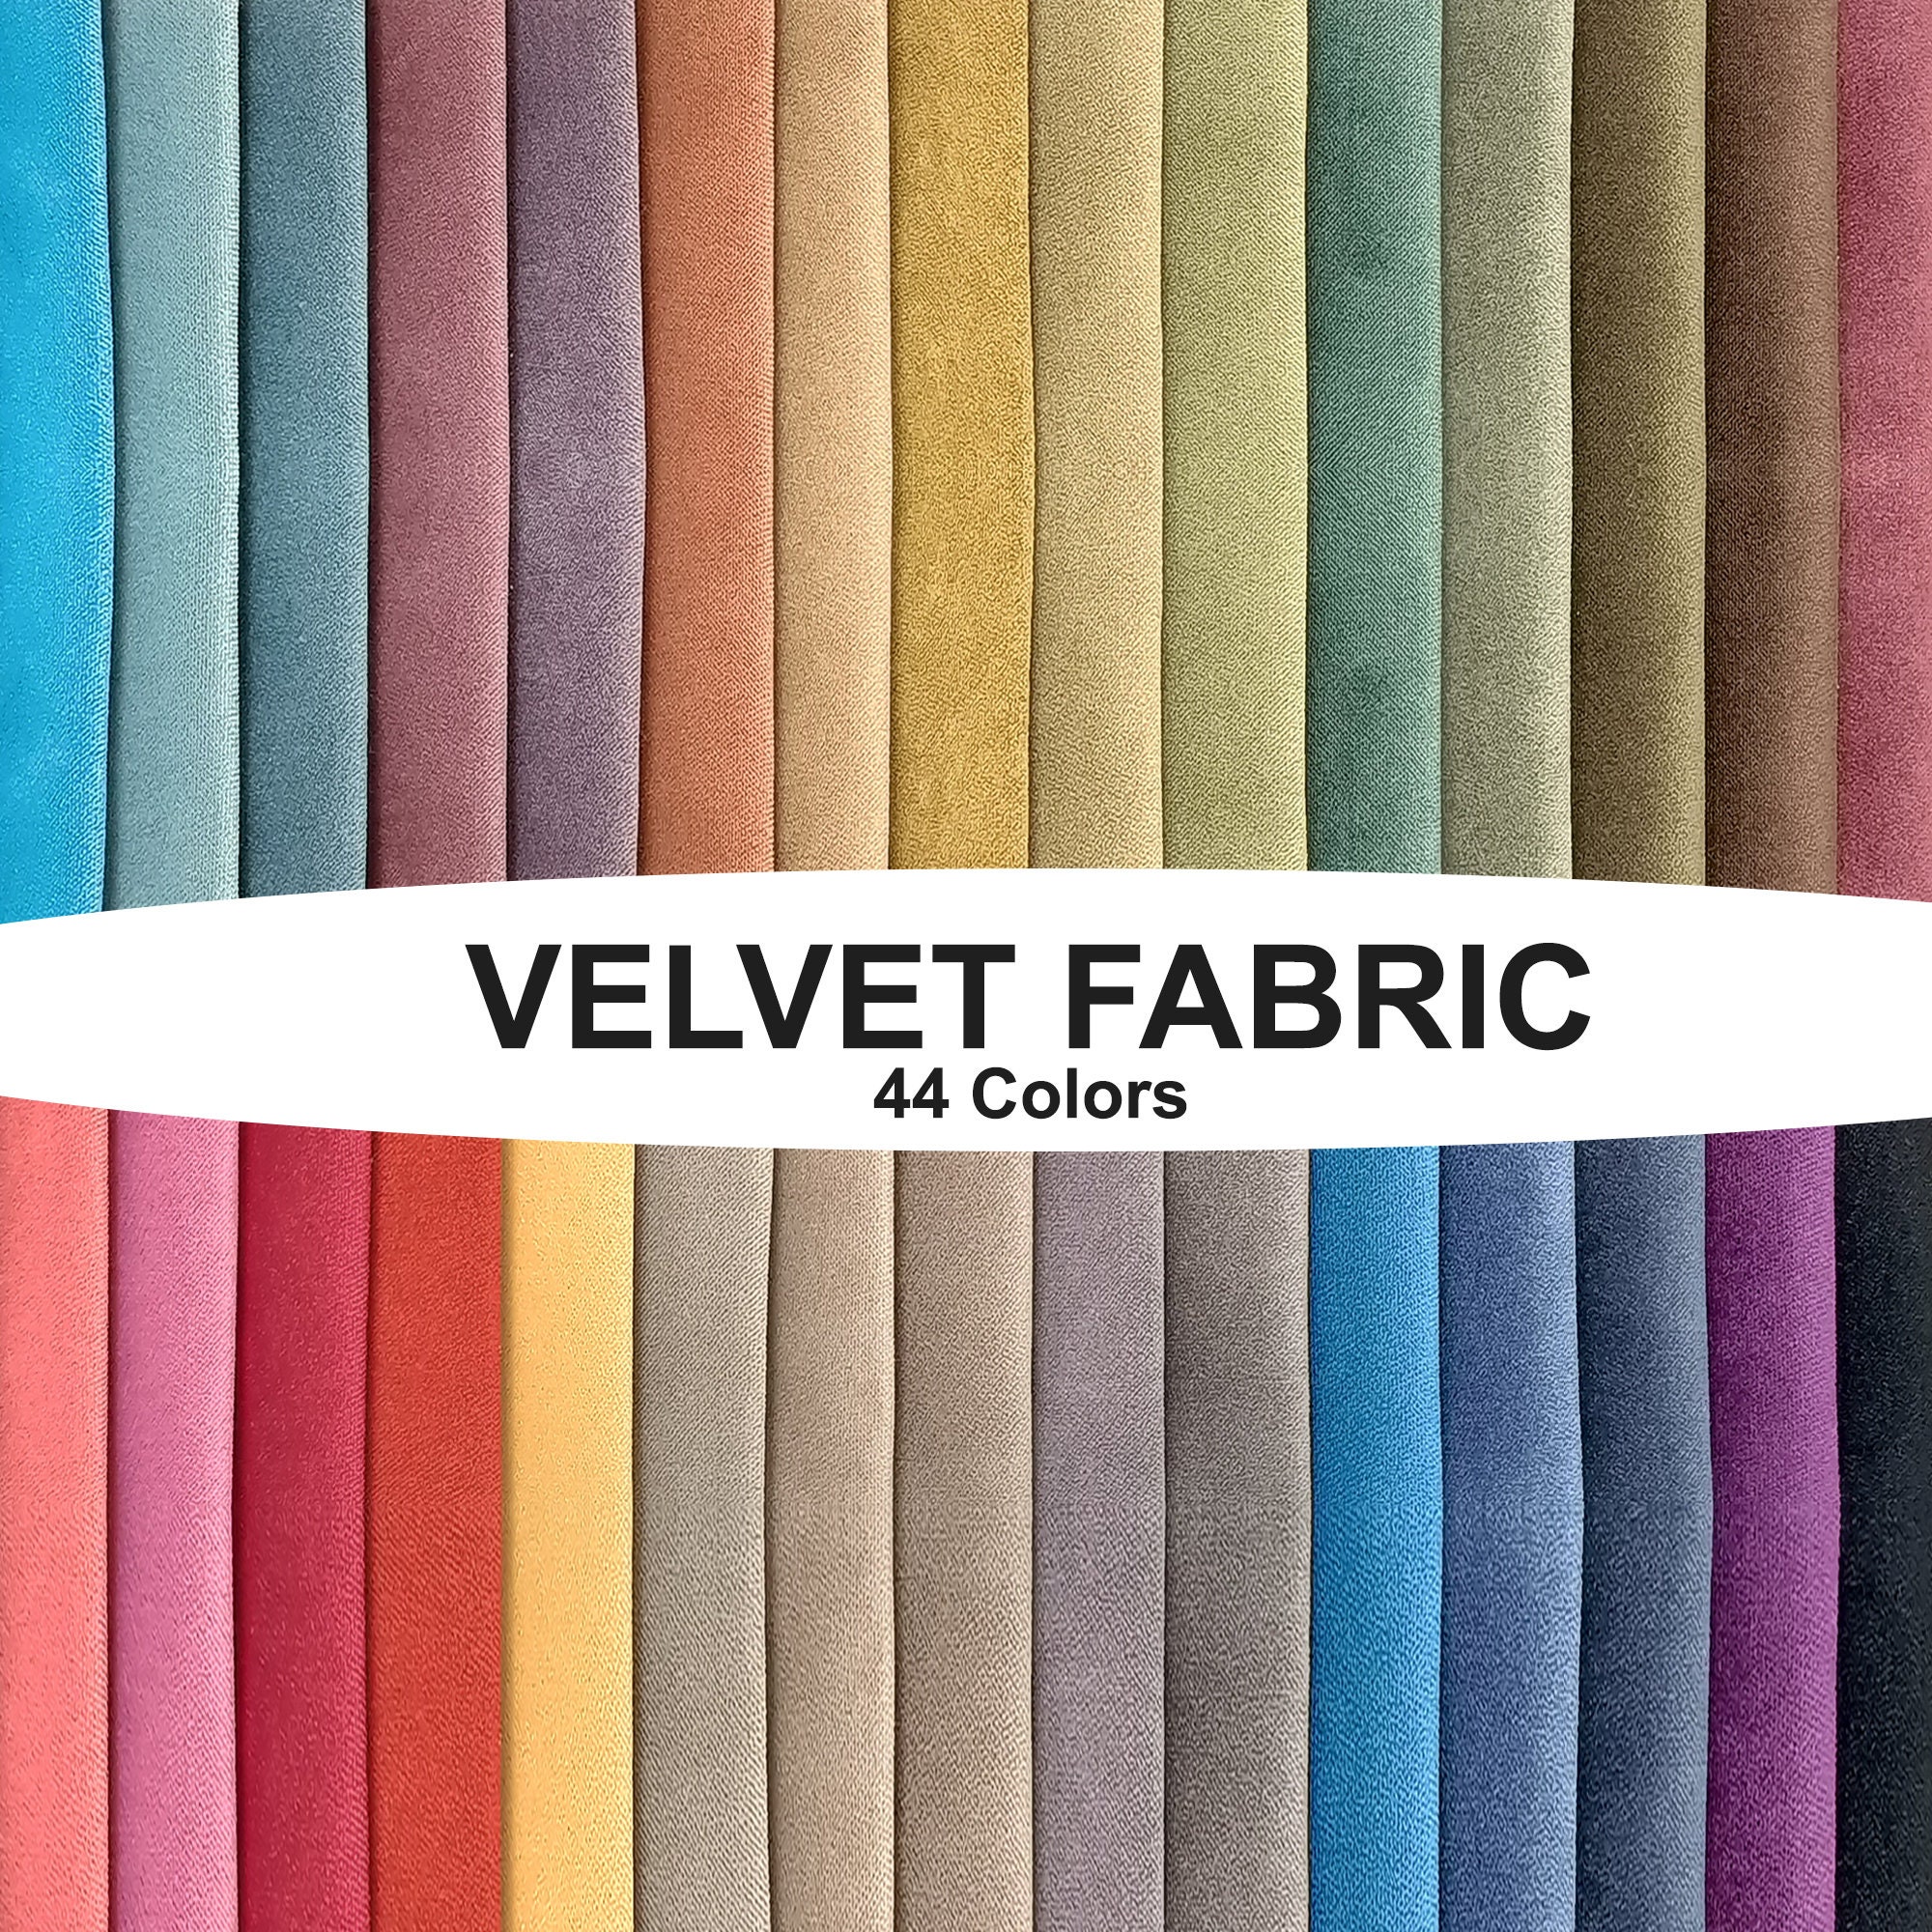 Velvet Fabrics Sofa Upholstery